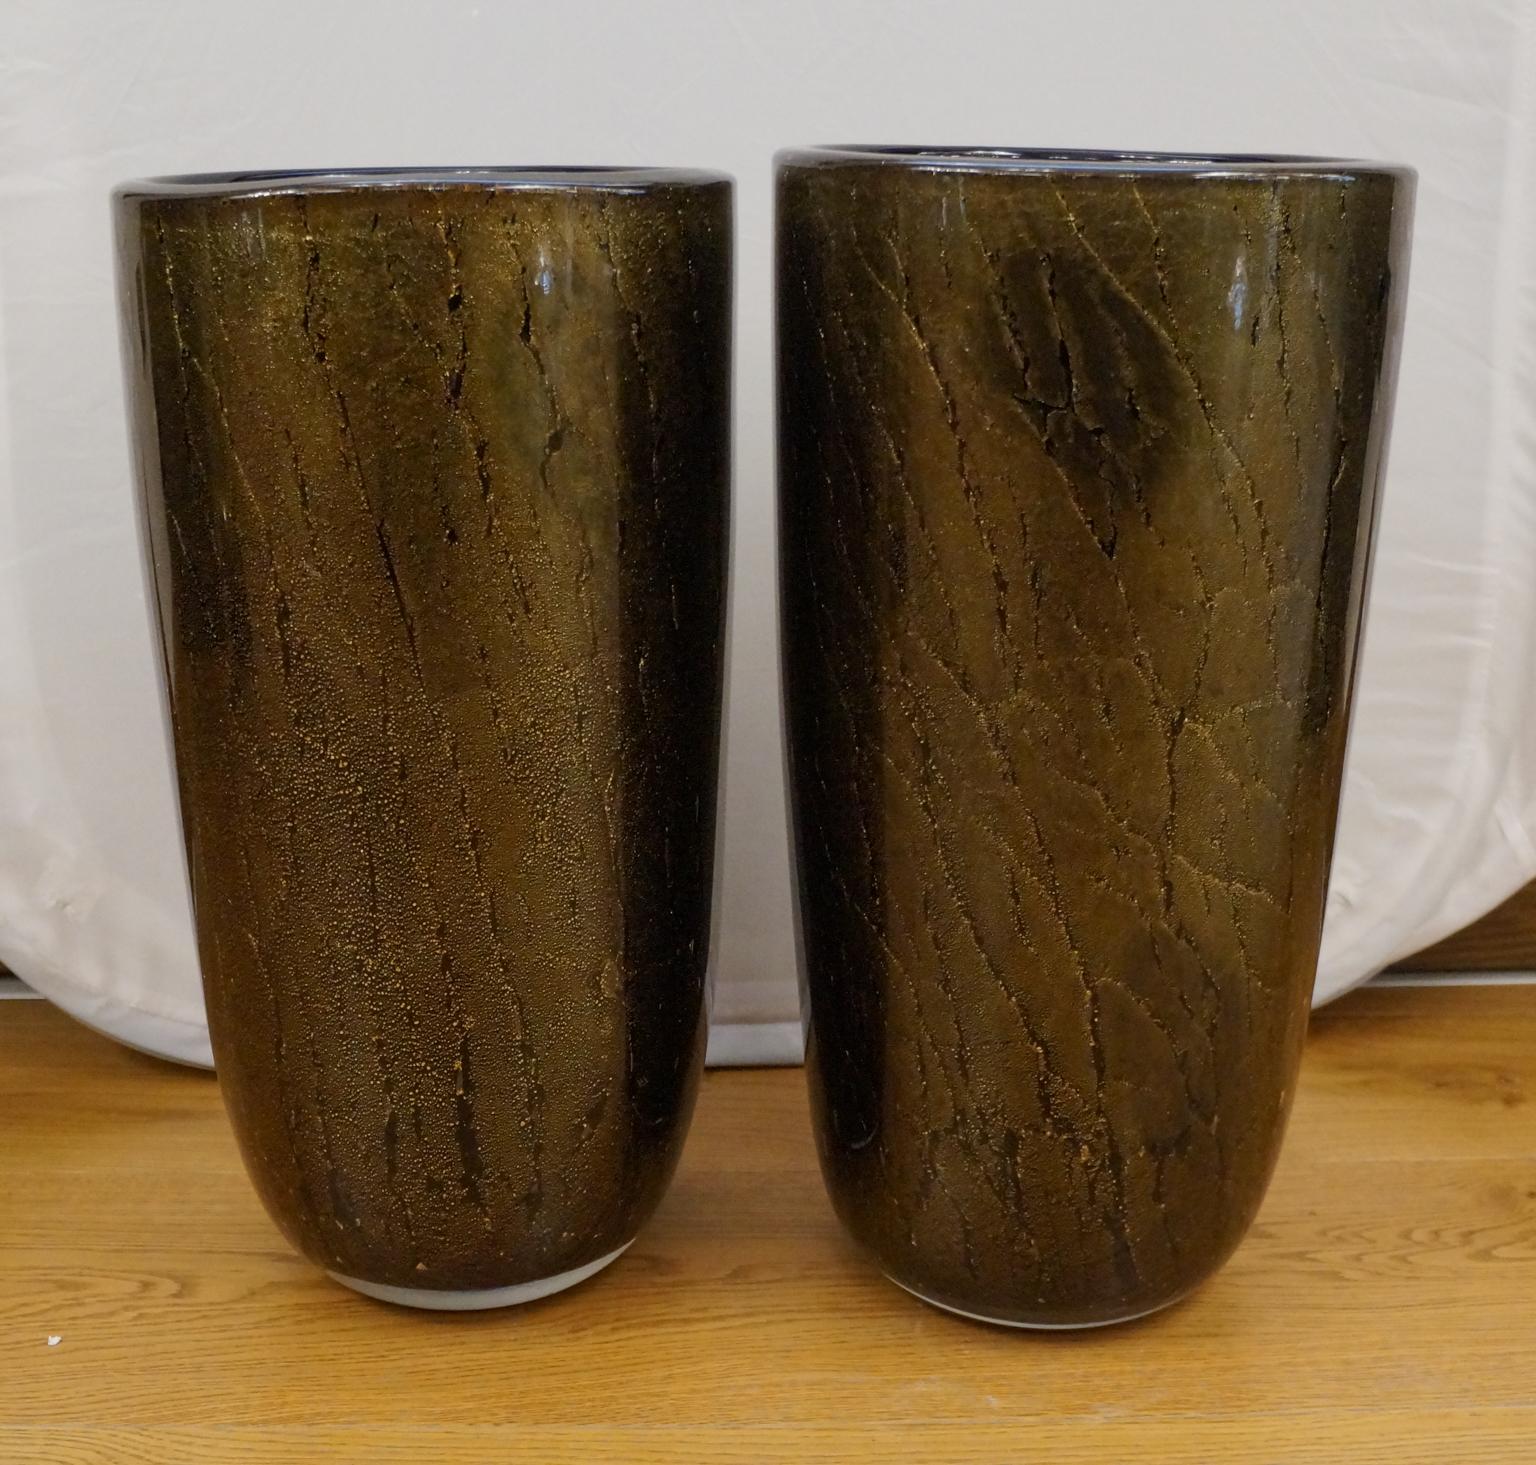 Zwei mundgeblasene Vasen aus Muranoglas, schwarze Farbe mit 24-karätigem Blattgold überzogen.
Die Vasen sind aus dickem Glas.
Dieses fantastische Kunstwerk im Art-Déco-Stil verleiht Ihrer Umgebung einen zusätzlichen Hauch von Klasse.
Projekt von